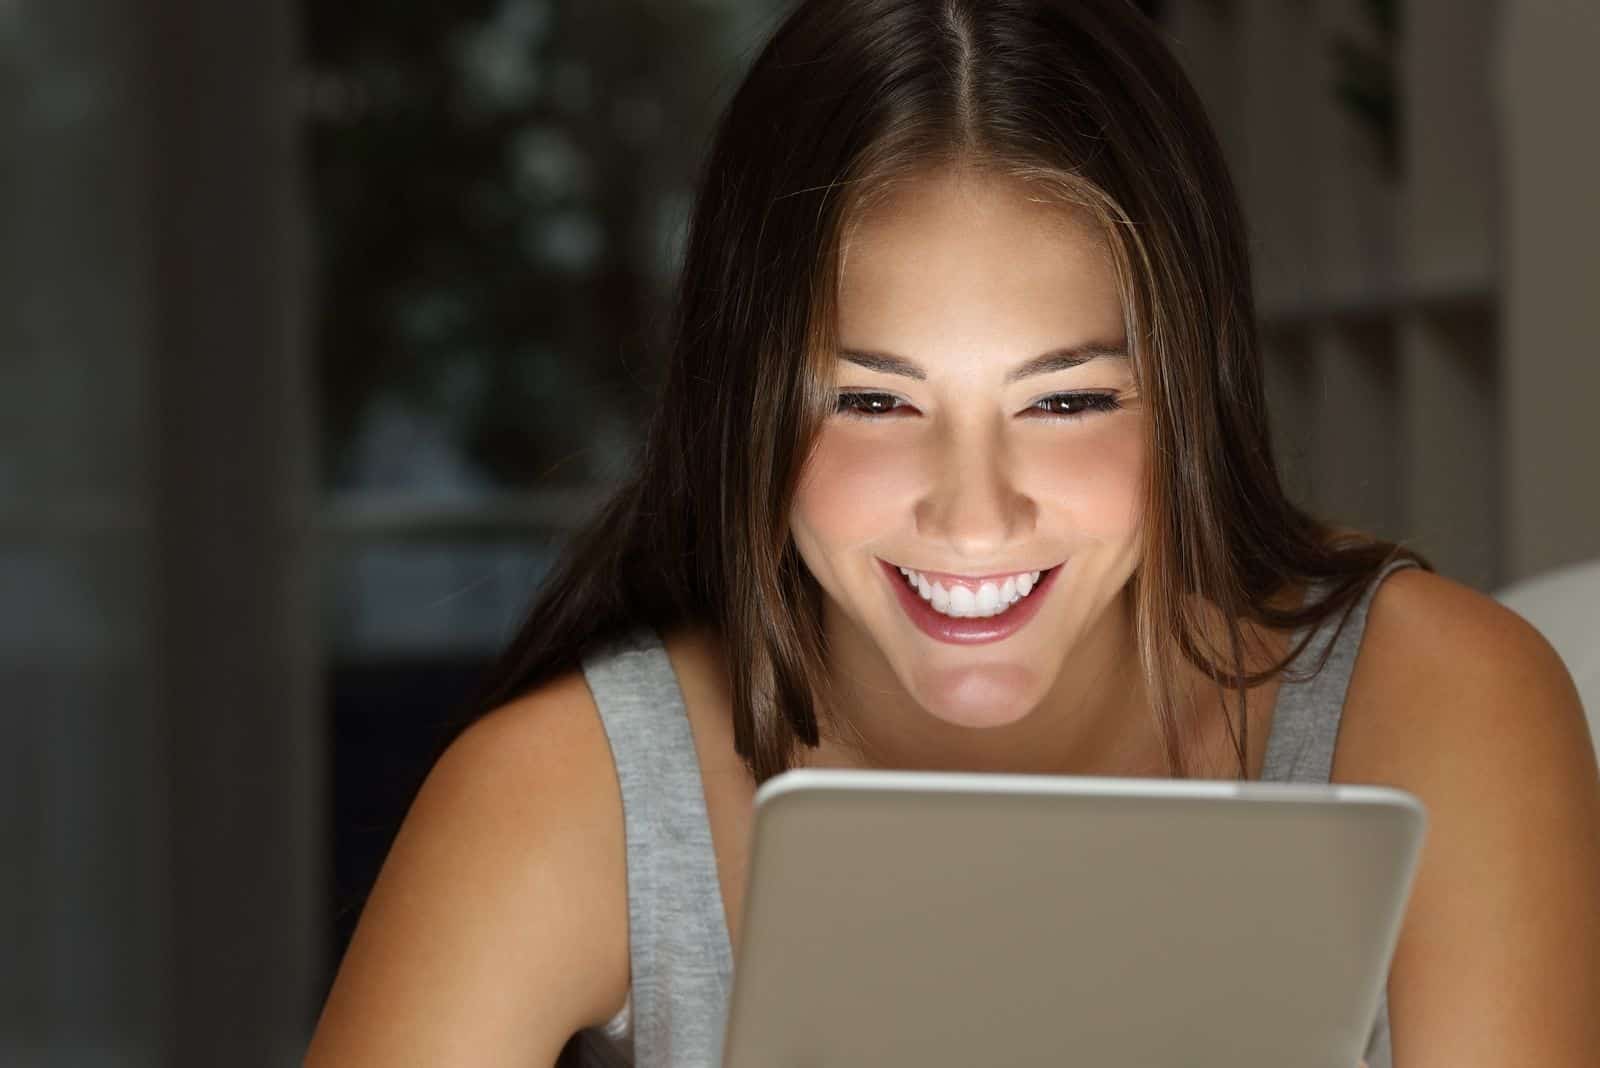 Frau lacht nachts Betrachten Sie ihre sozialen Medien über die Registerkarte in Nahaufnahme